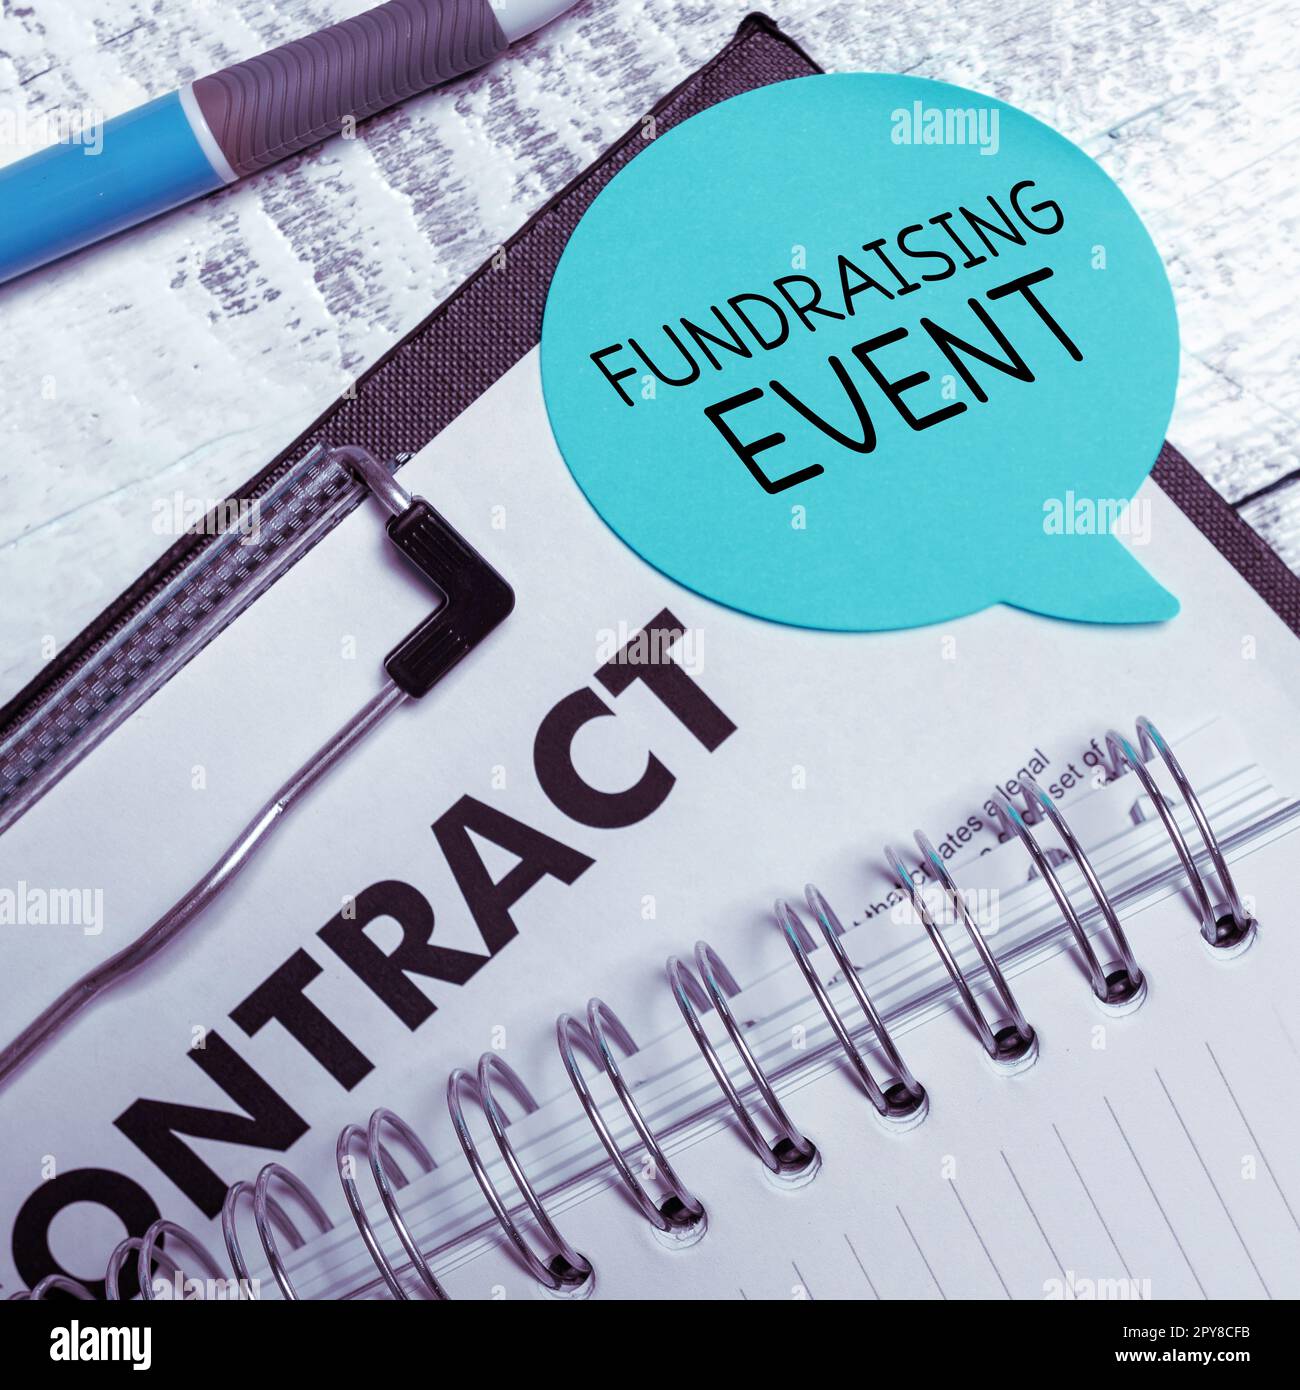 Handgeschriebenes Schild Fundraising Event. Internet Concept Campaign, deren Zweck es ist, Geld für eine Sache zu sammeln Stockfoto